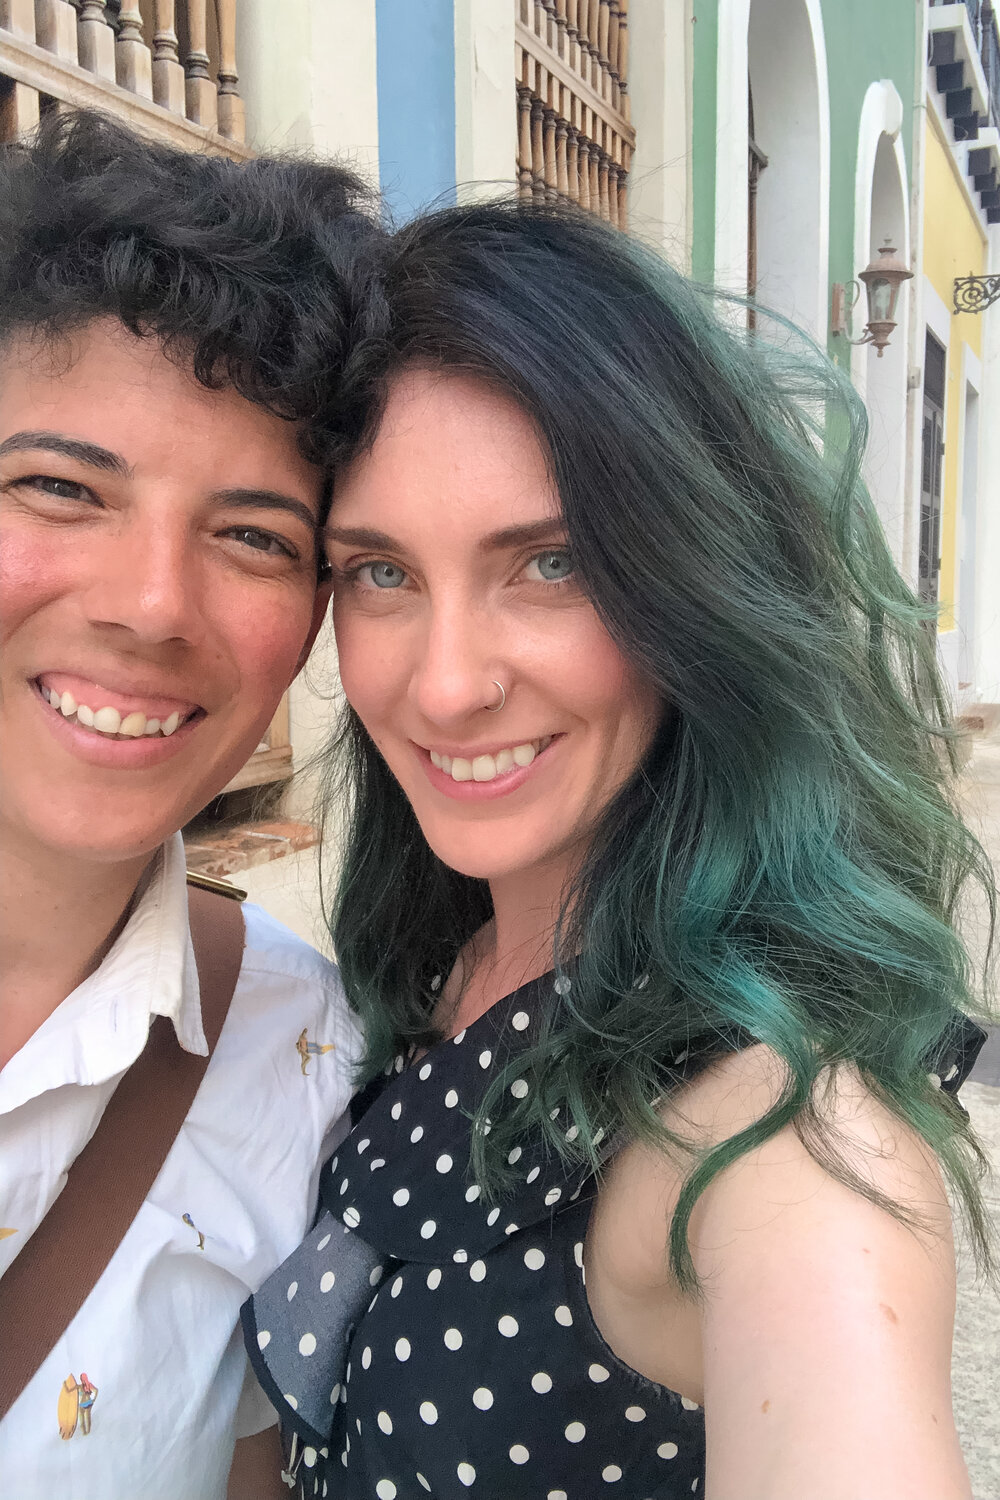 LesBiTravels-Queer-Travel-Honeymoon-Puerto-Rico-May-2019-45.jpg